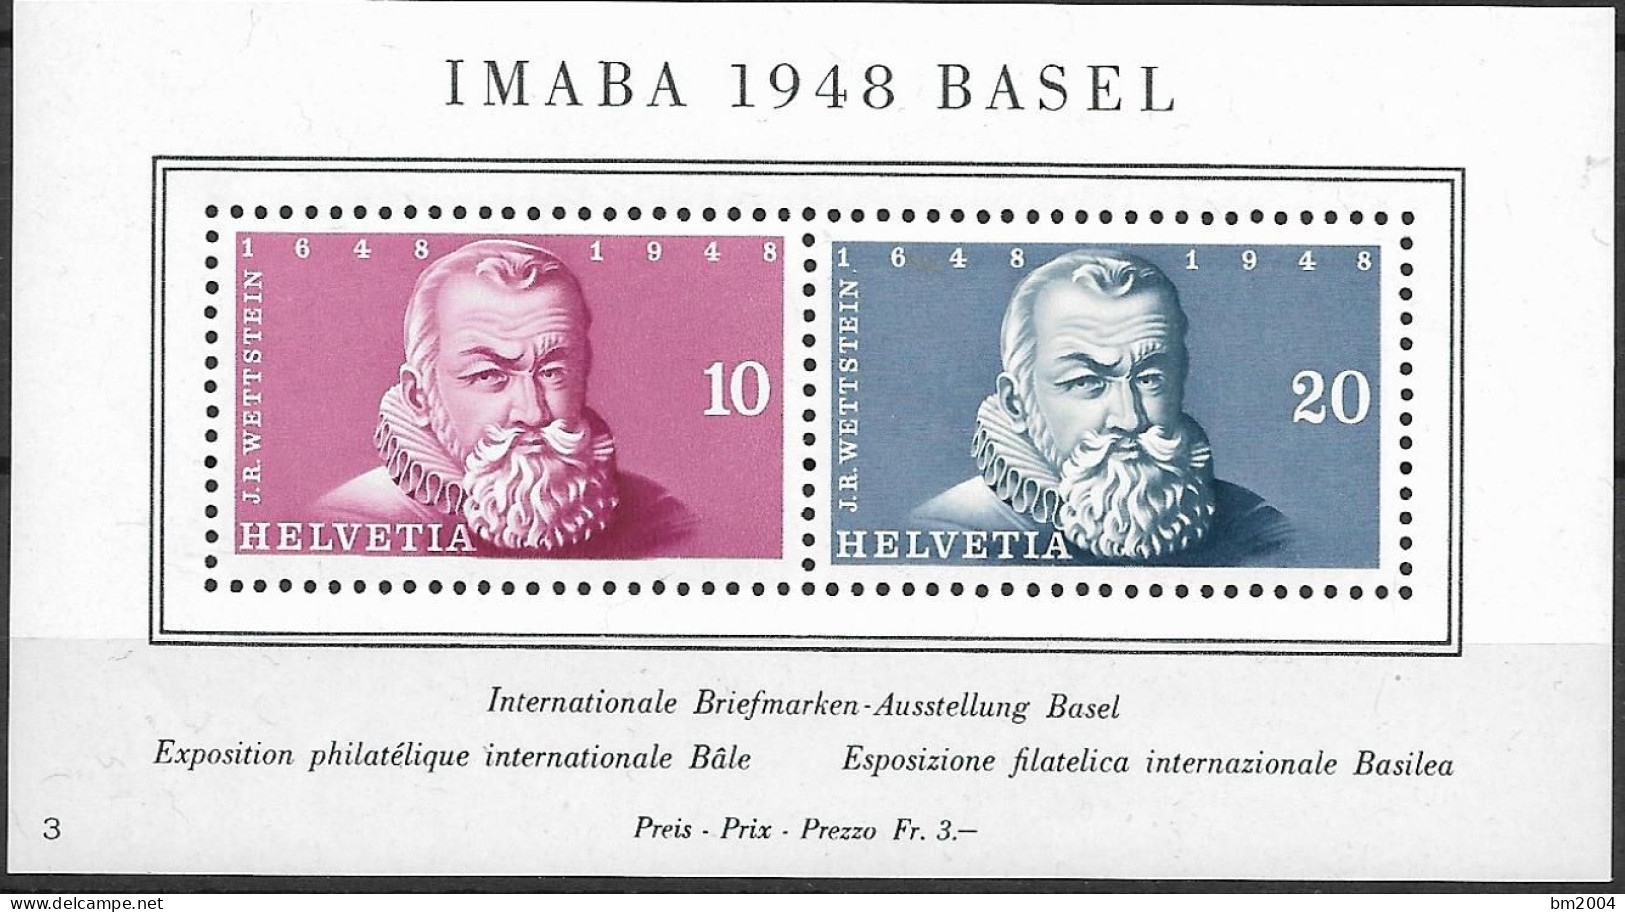 1948 Schweiz Mi. Bl. 13**MNH Internationale Briefmarkenausstellung IMABA 1948, Basel. - Neufs